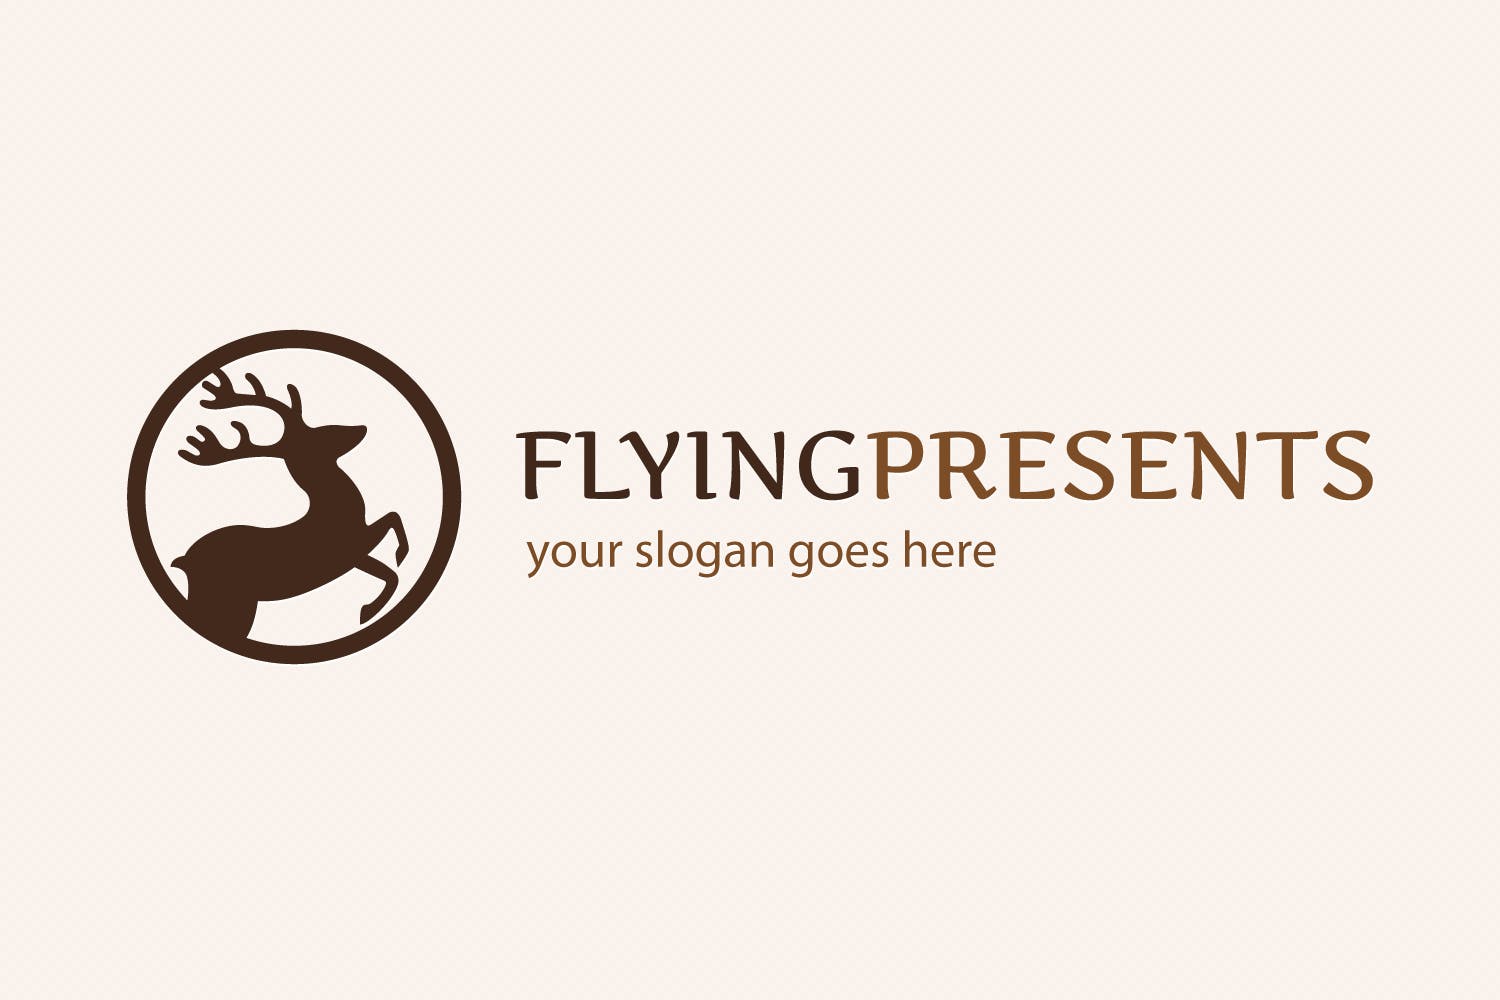 飞行驯鹿图形Logo设计模板 Flying Reindeer Logo插图(4)